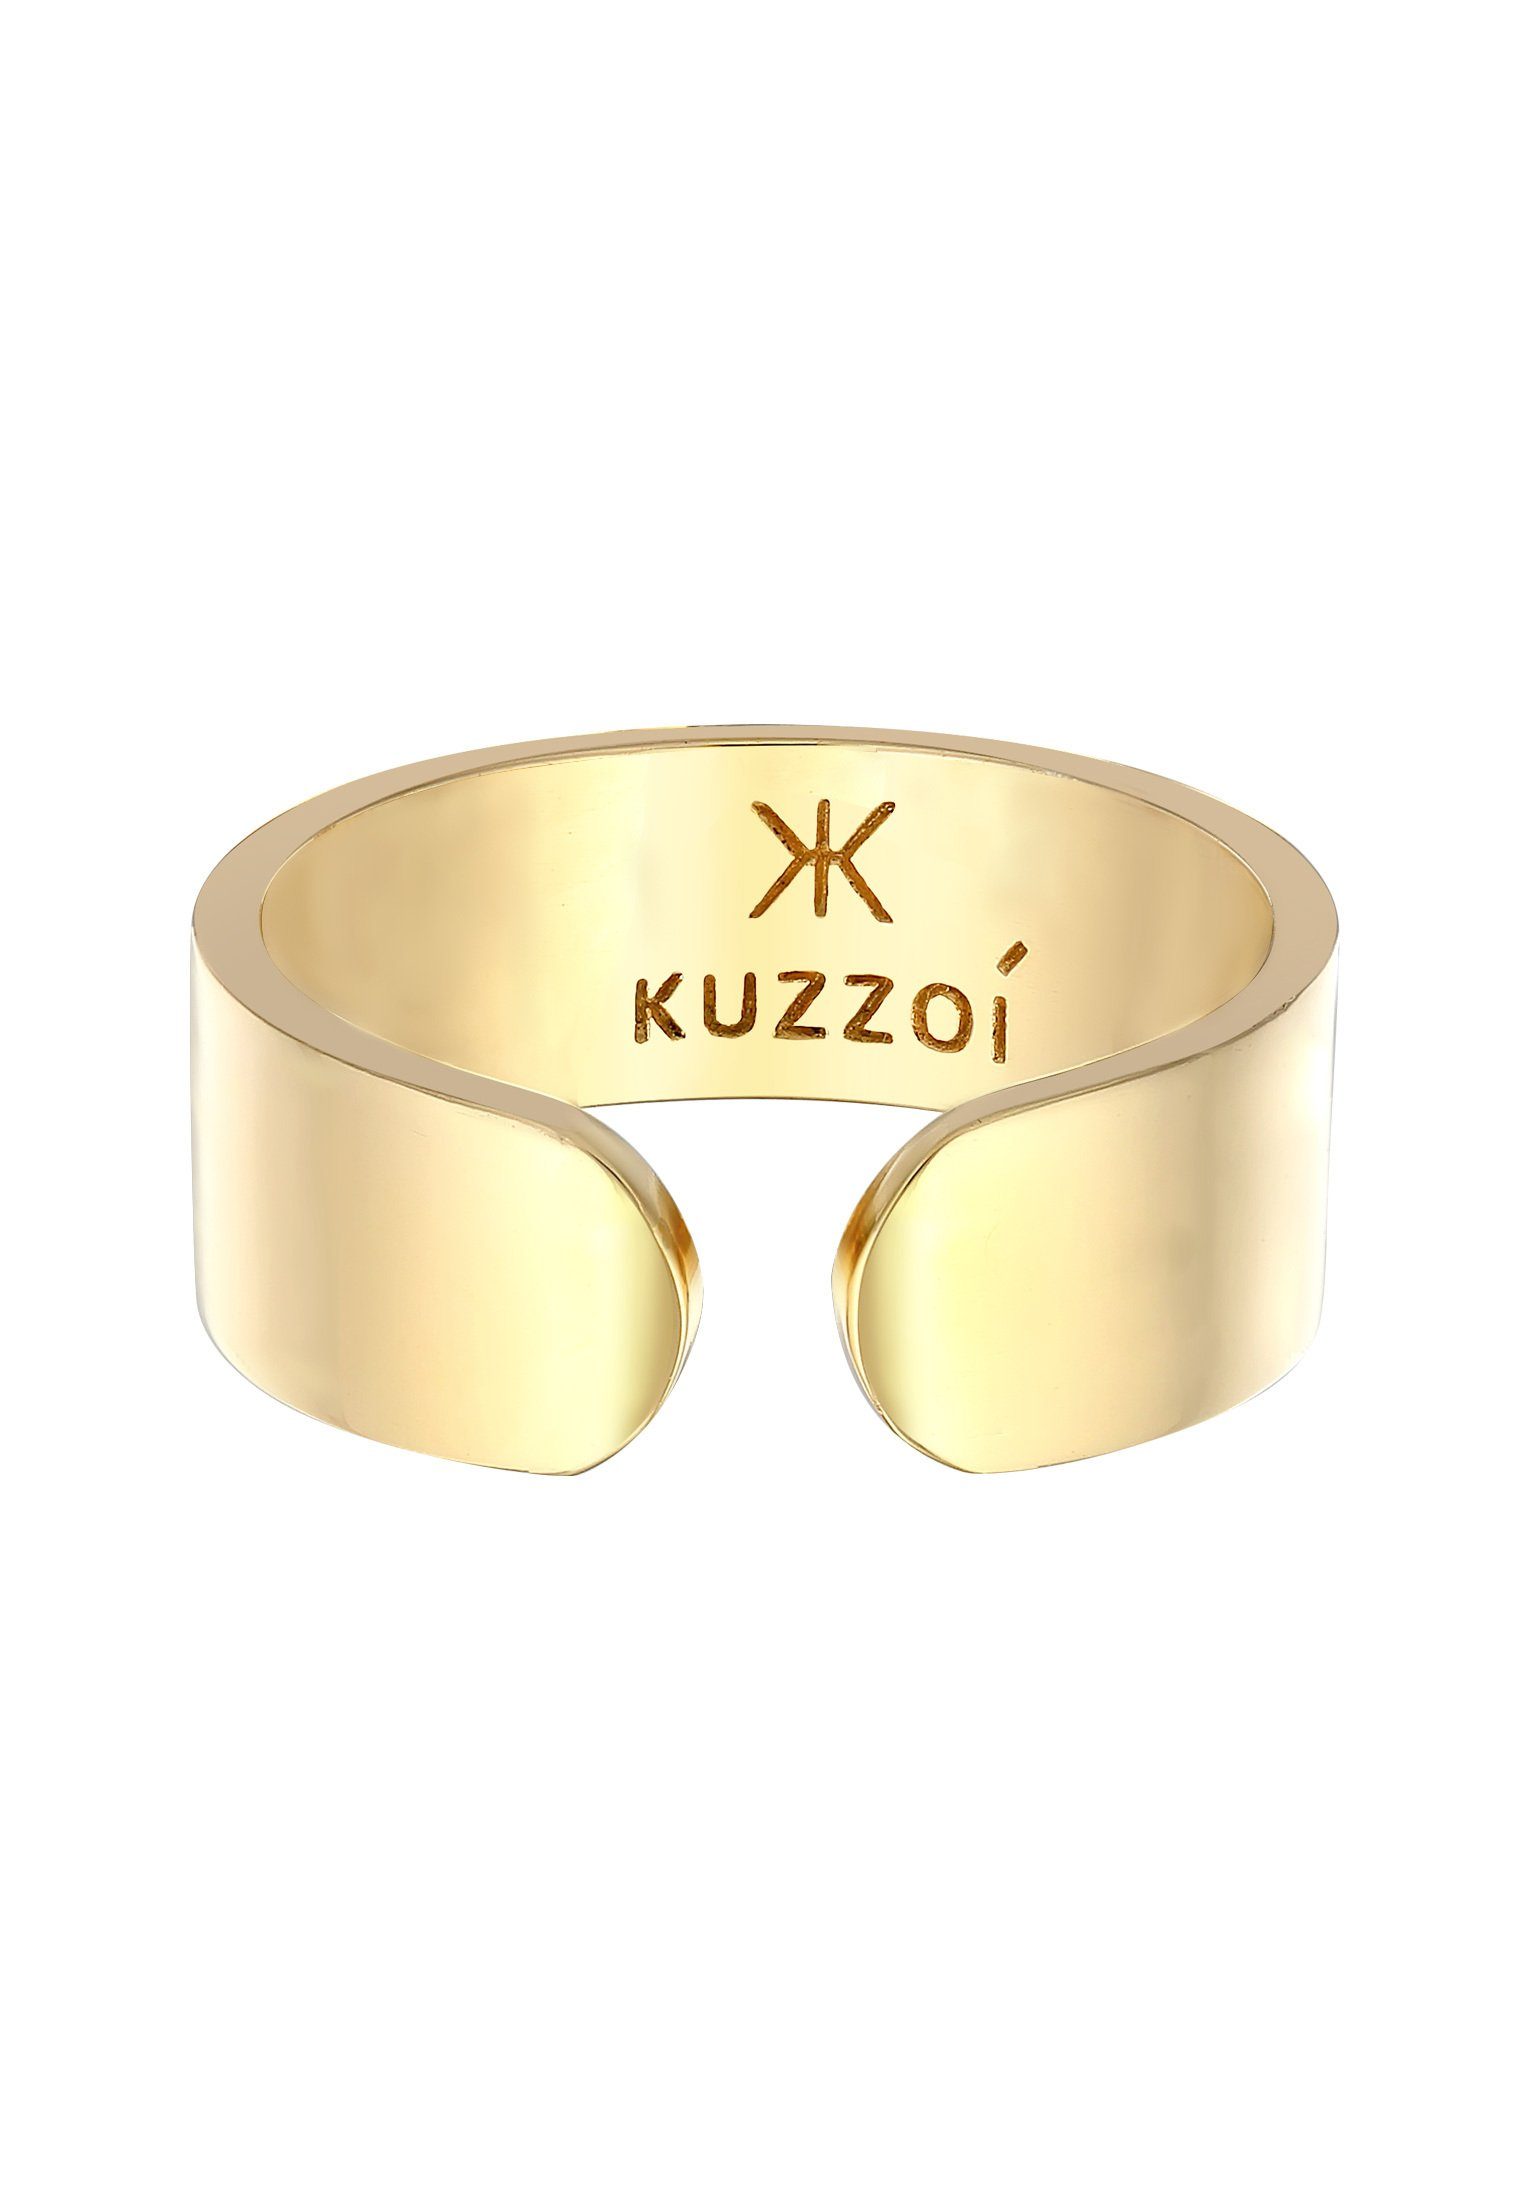 Kuzzoi Silberring Bandring Klares Design 925 Offen Gold Silber